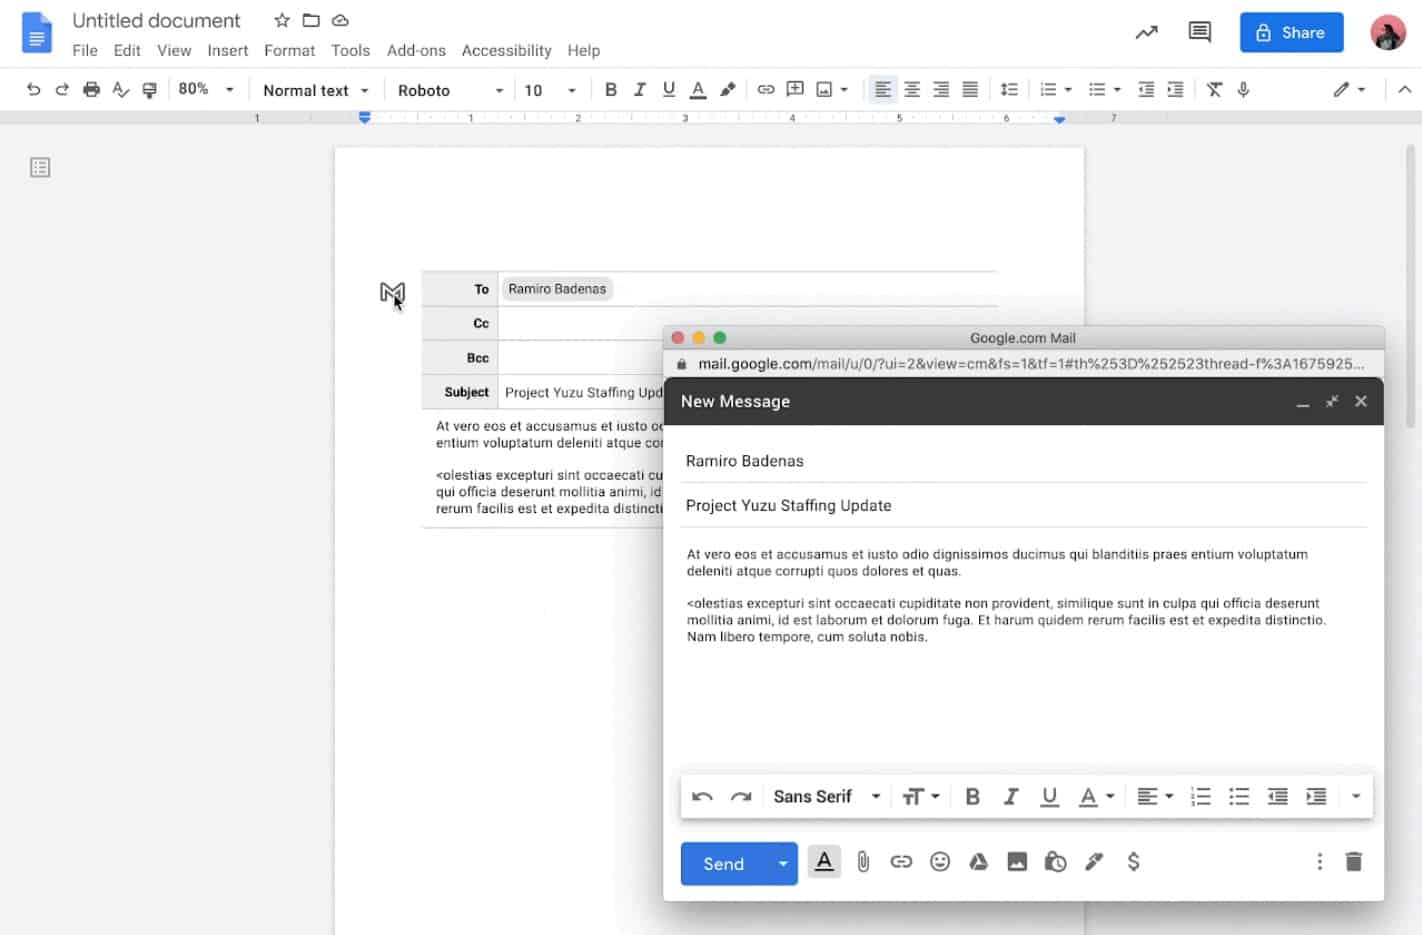 Agora é possível enviar e-mails através do Google Docs